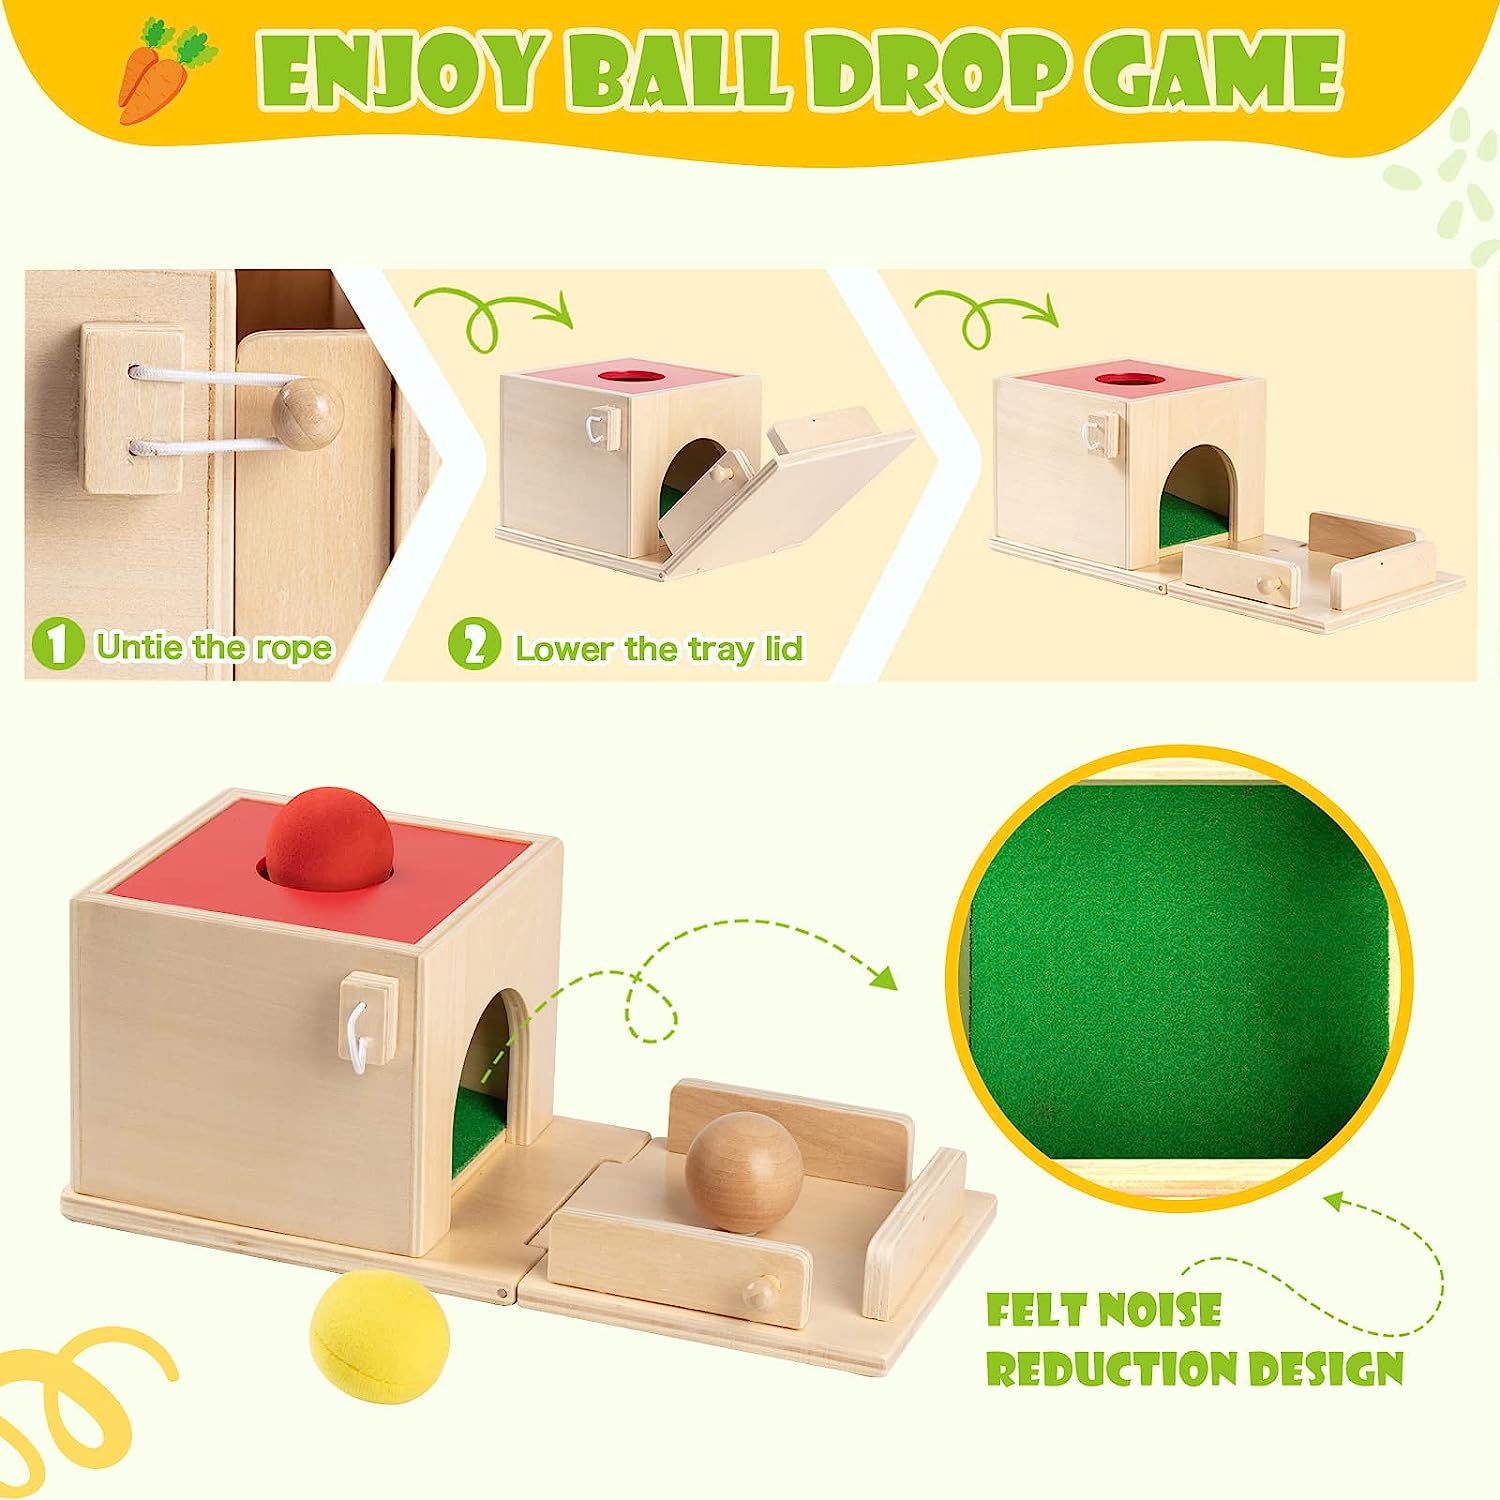 5-in-1 Montessori Wooden Toy Set